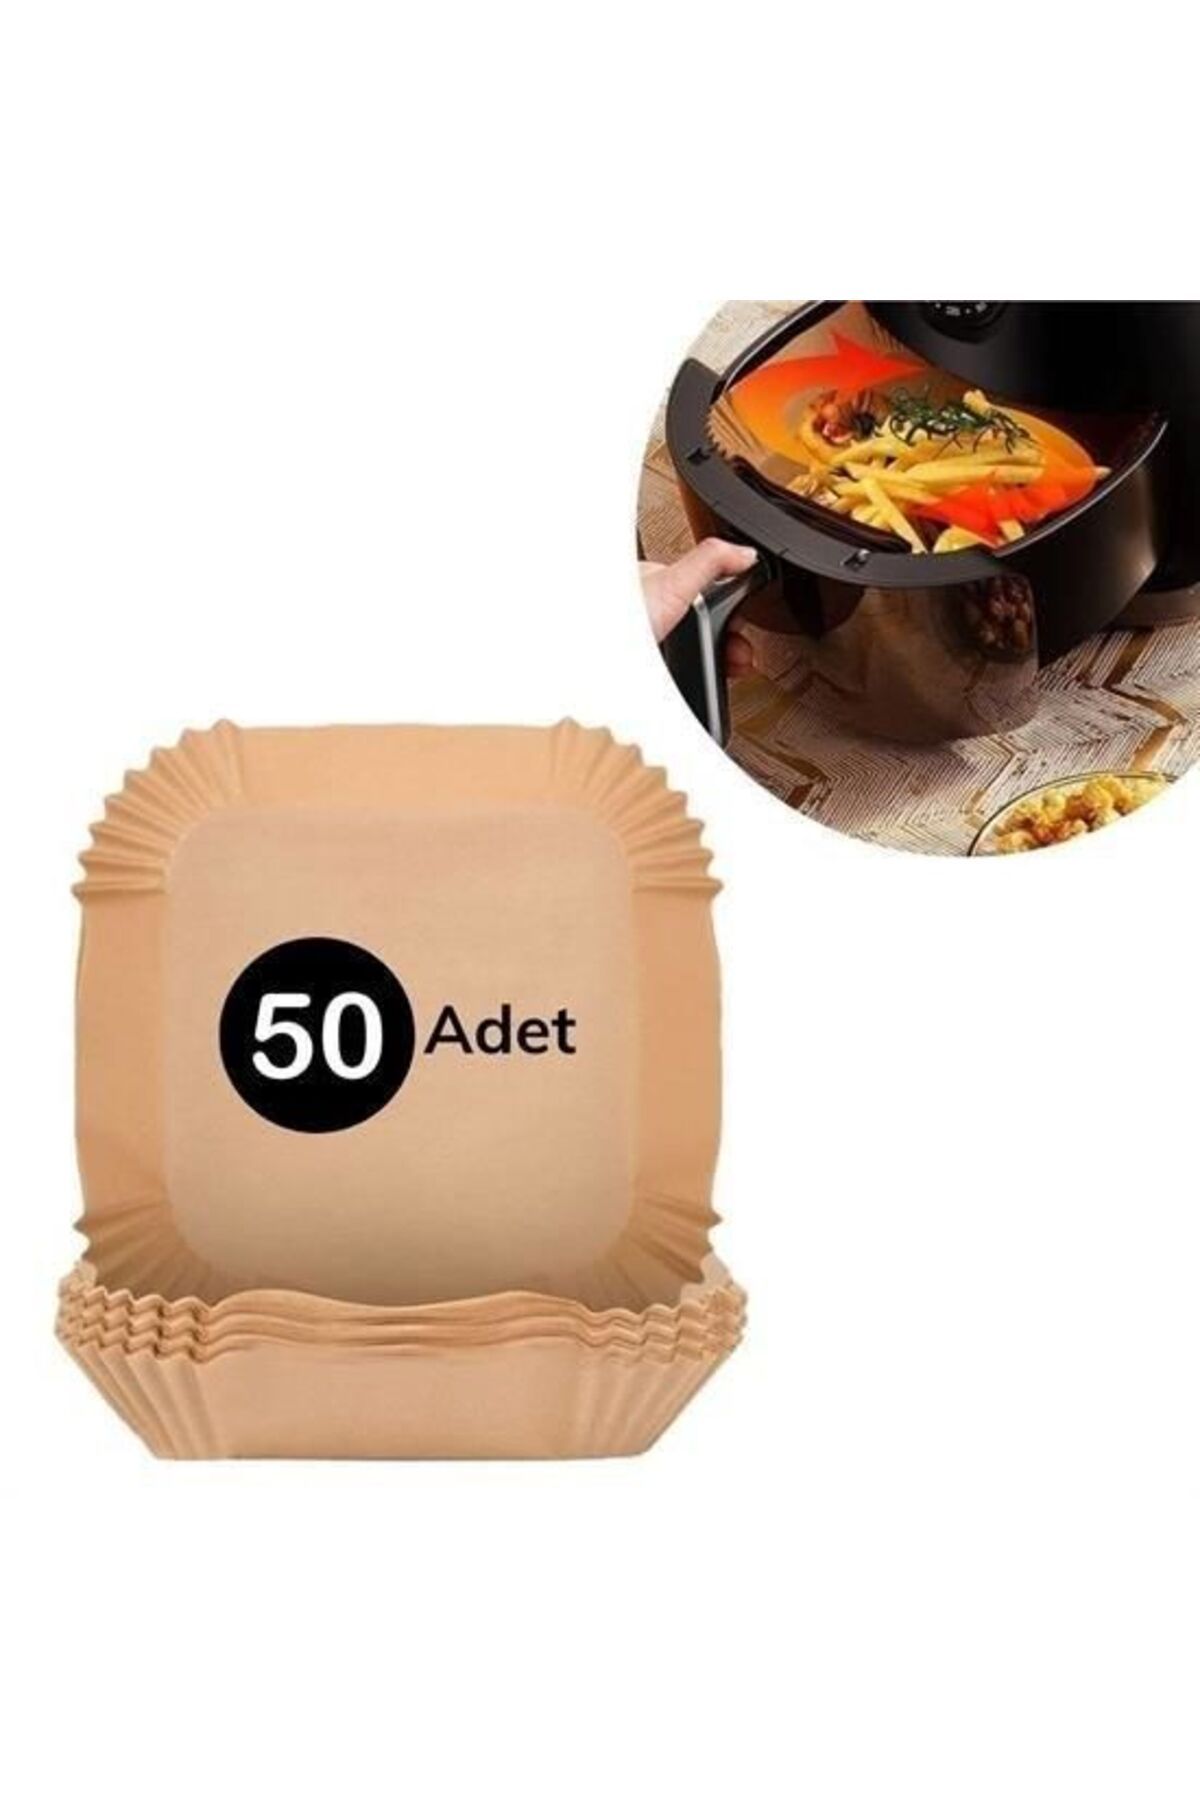 sinerjim 50 Adet Air Fryer Pişirme Kağıdı Tek Kullanımlık Hava Fritöz Yağ Geçirmez Yapışmaz Kare Tabak Model